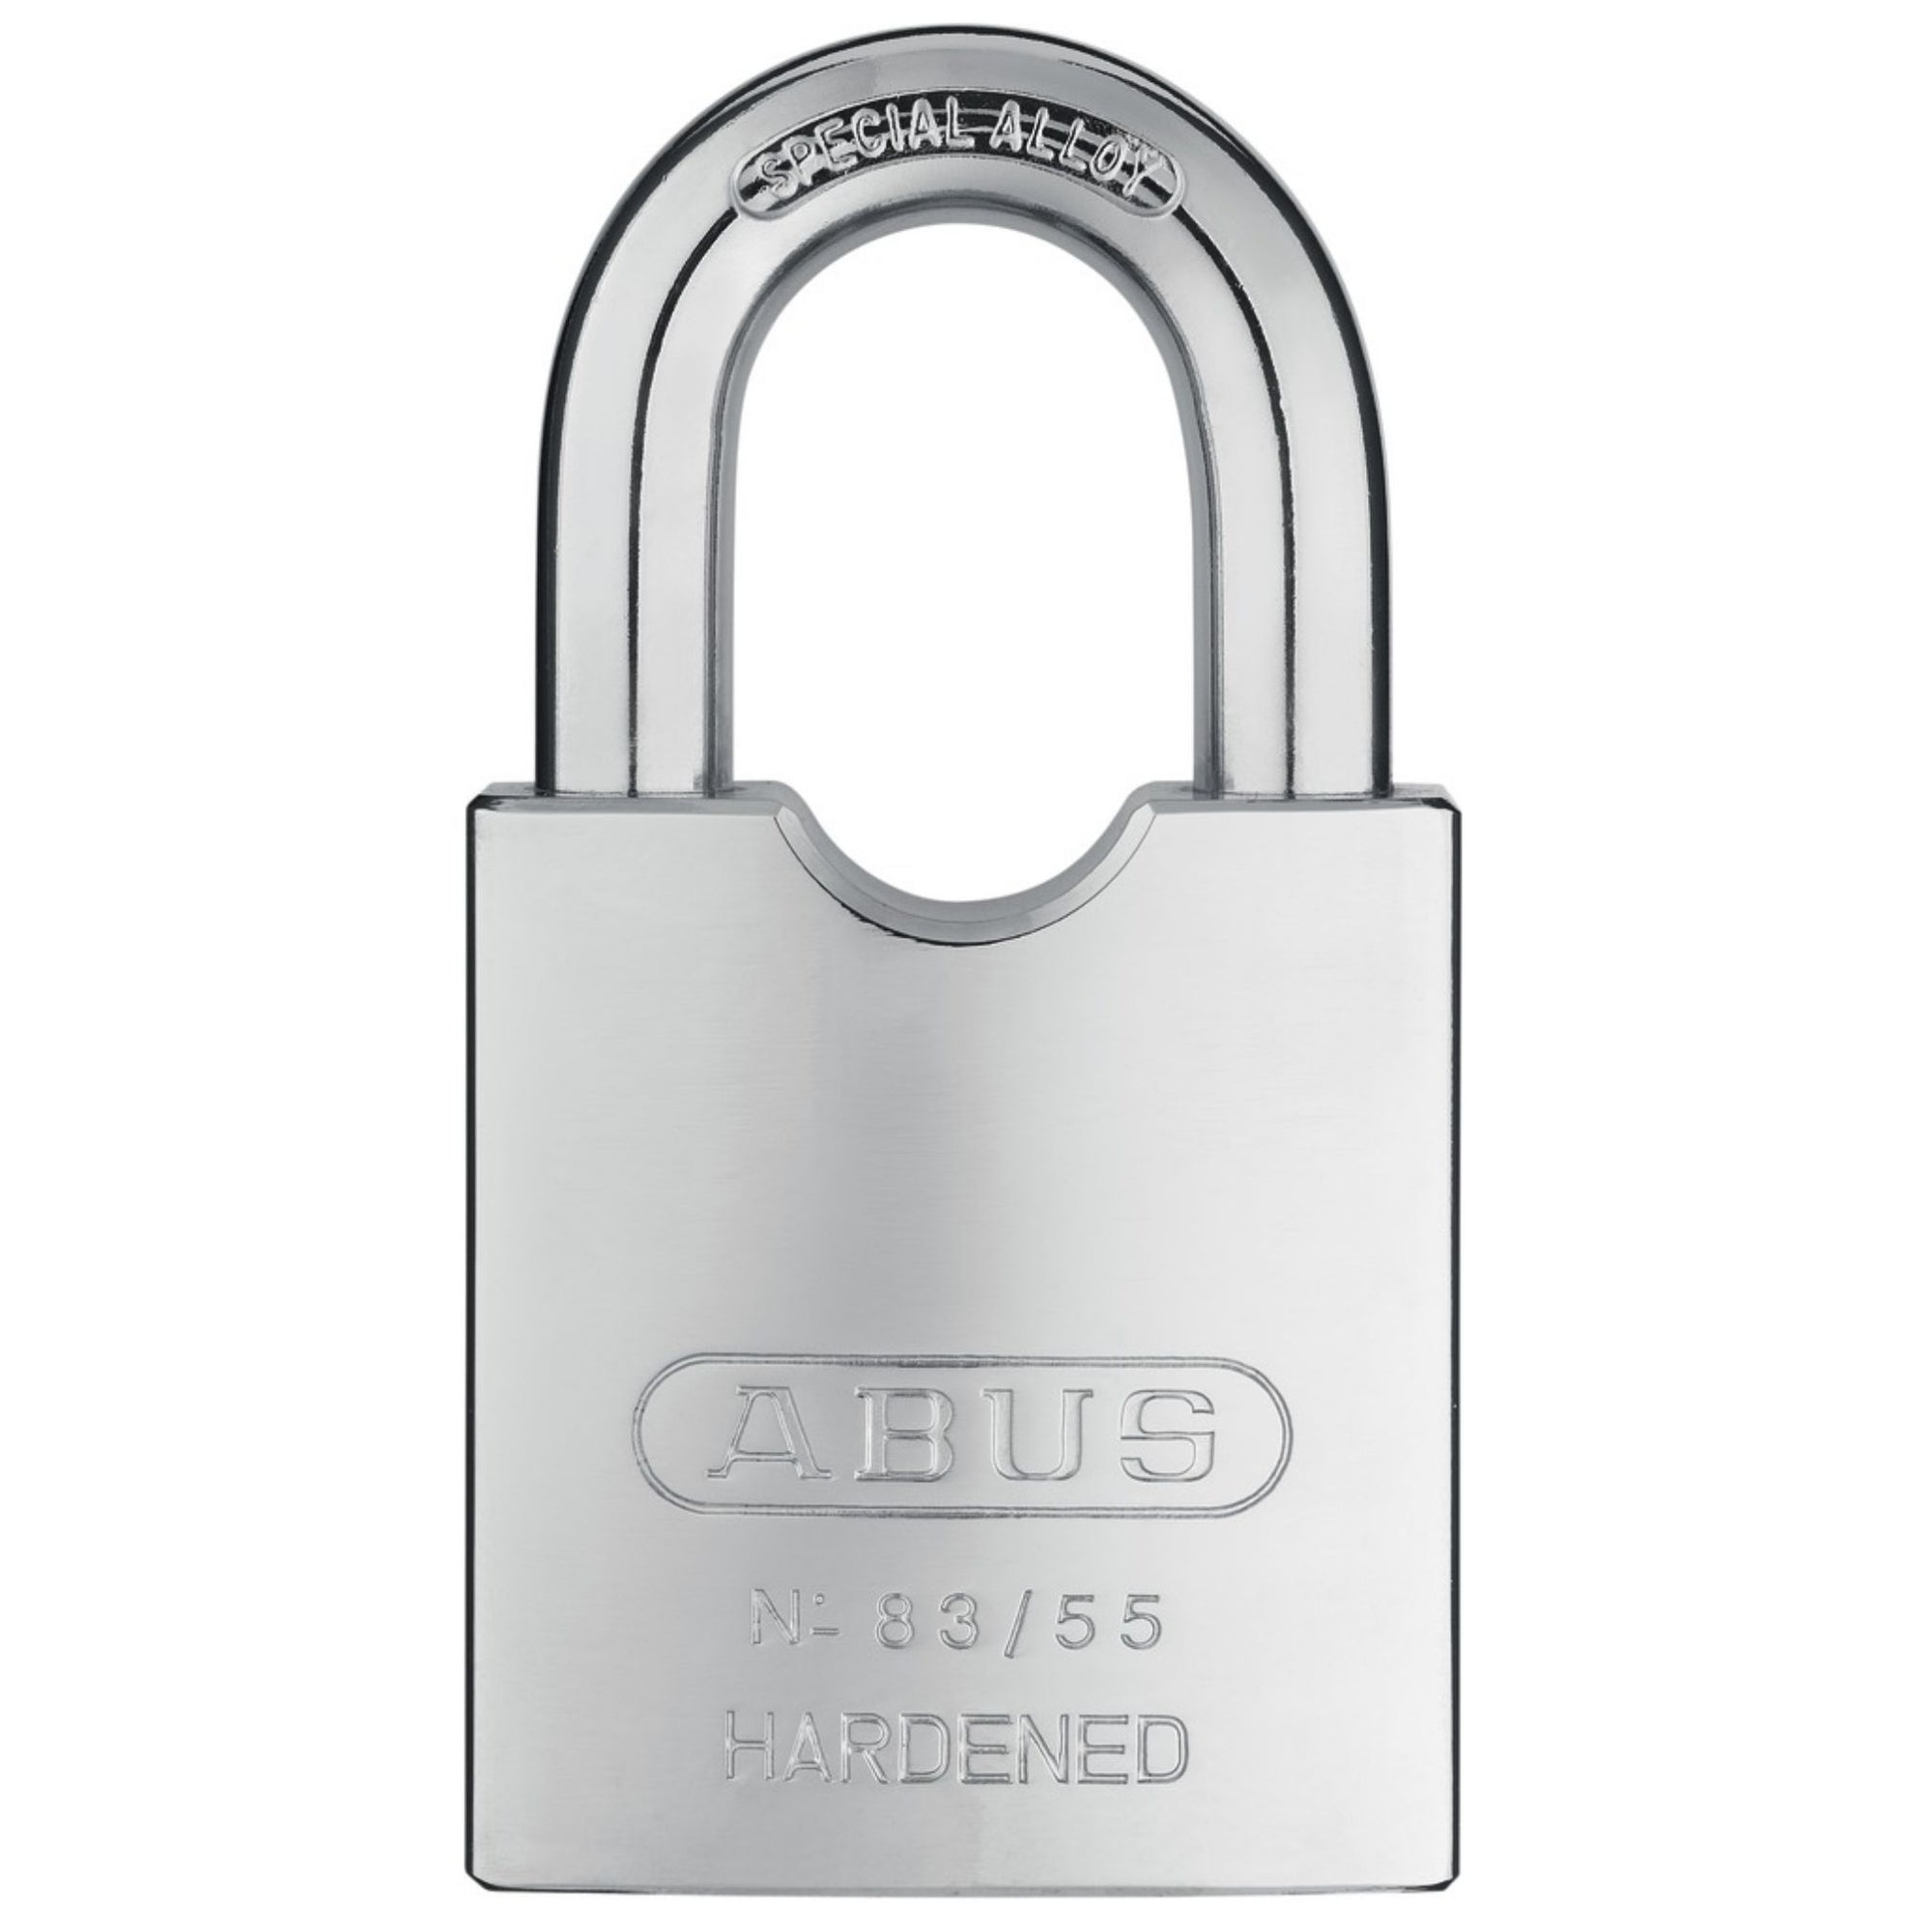 Abus 83/55 Steel Rock Series Hardened Steel Rekeyable Locks Accept Many Popular OEM Keyway Cylinders - The Lock Source